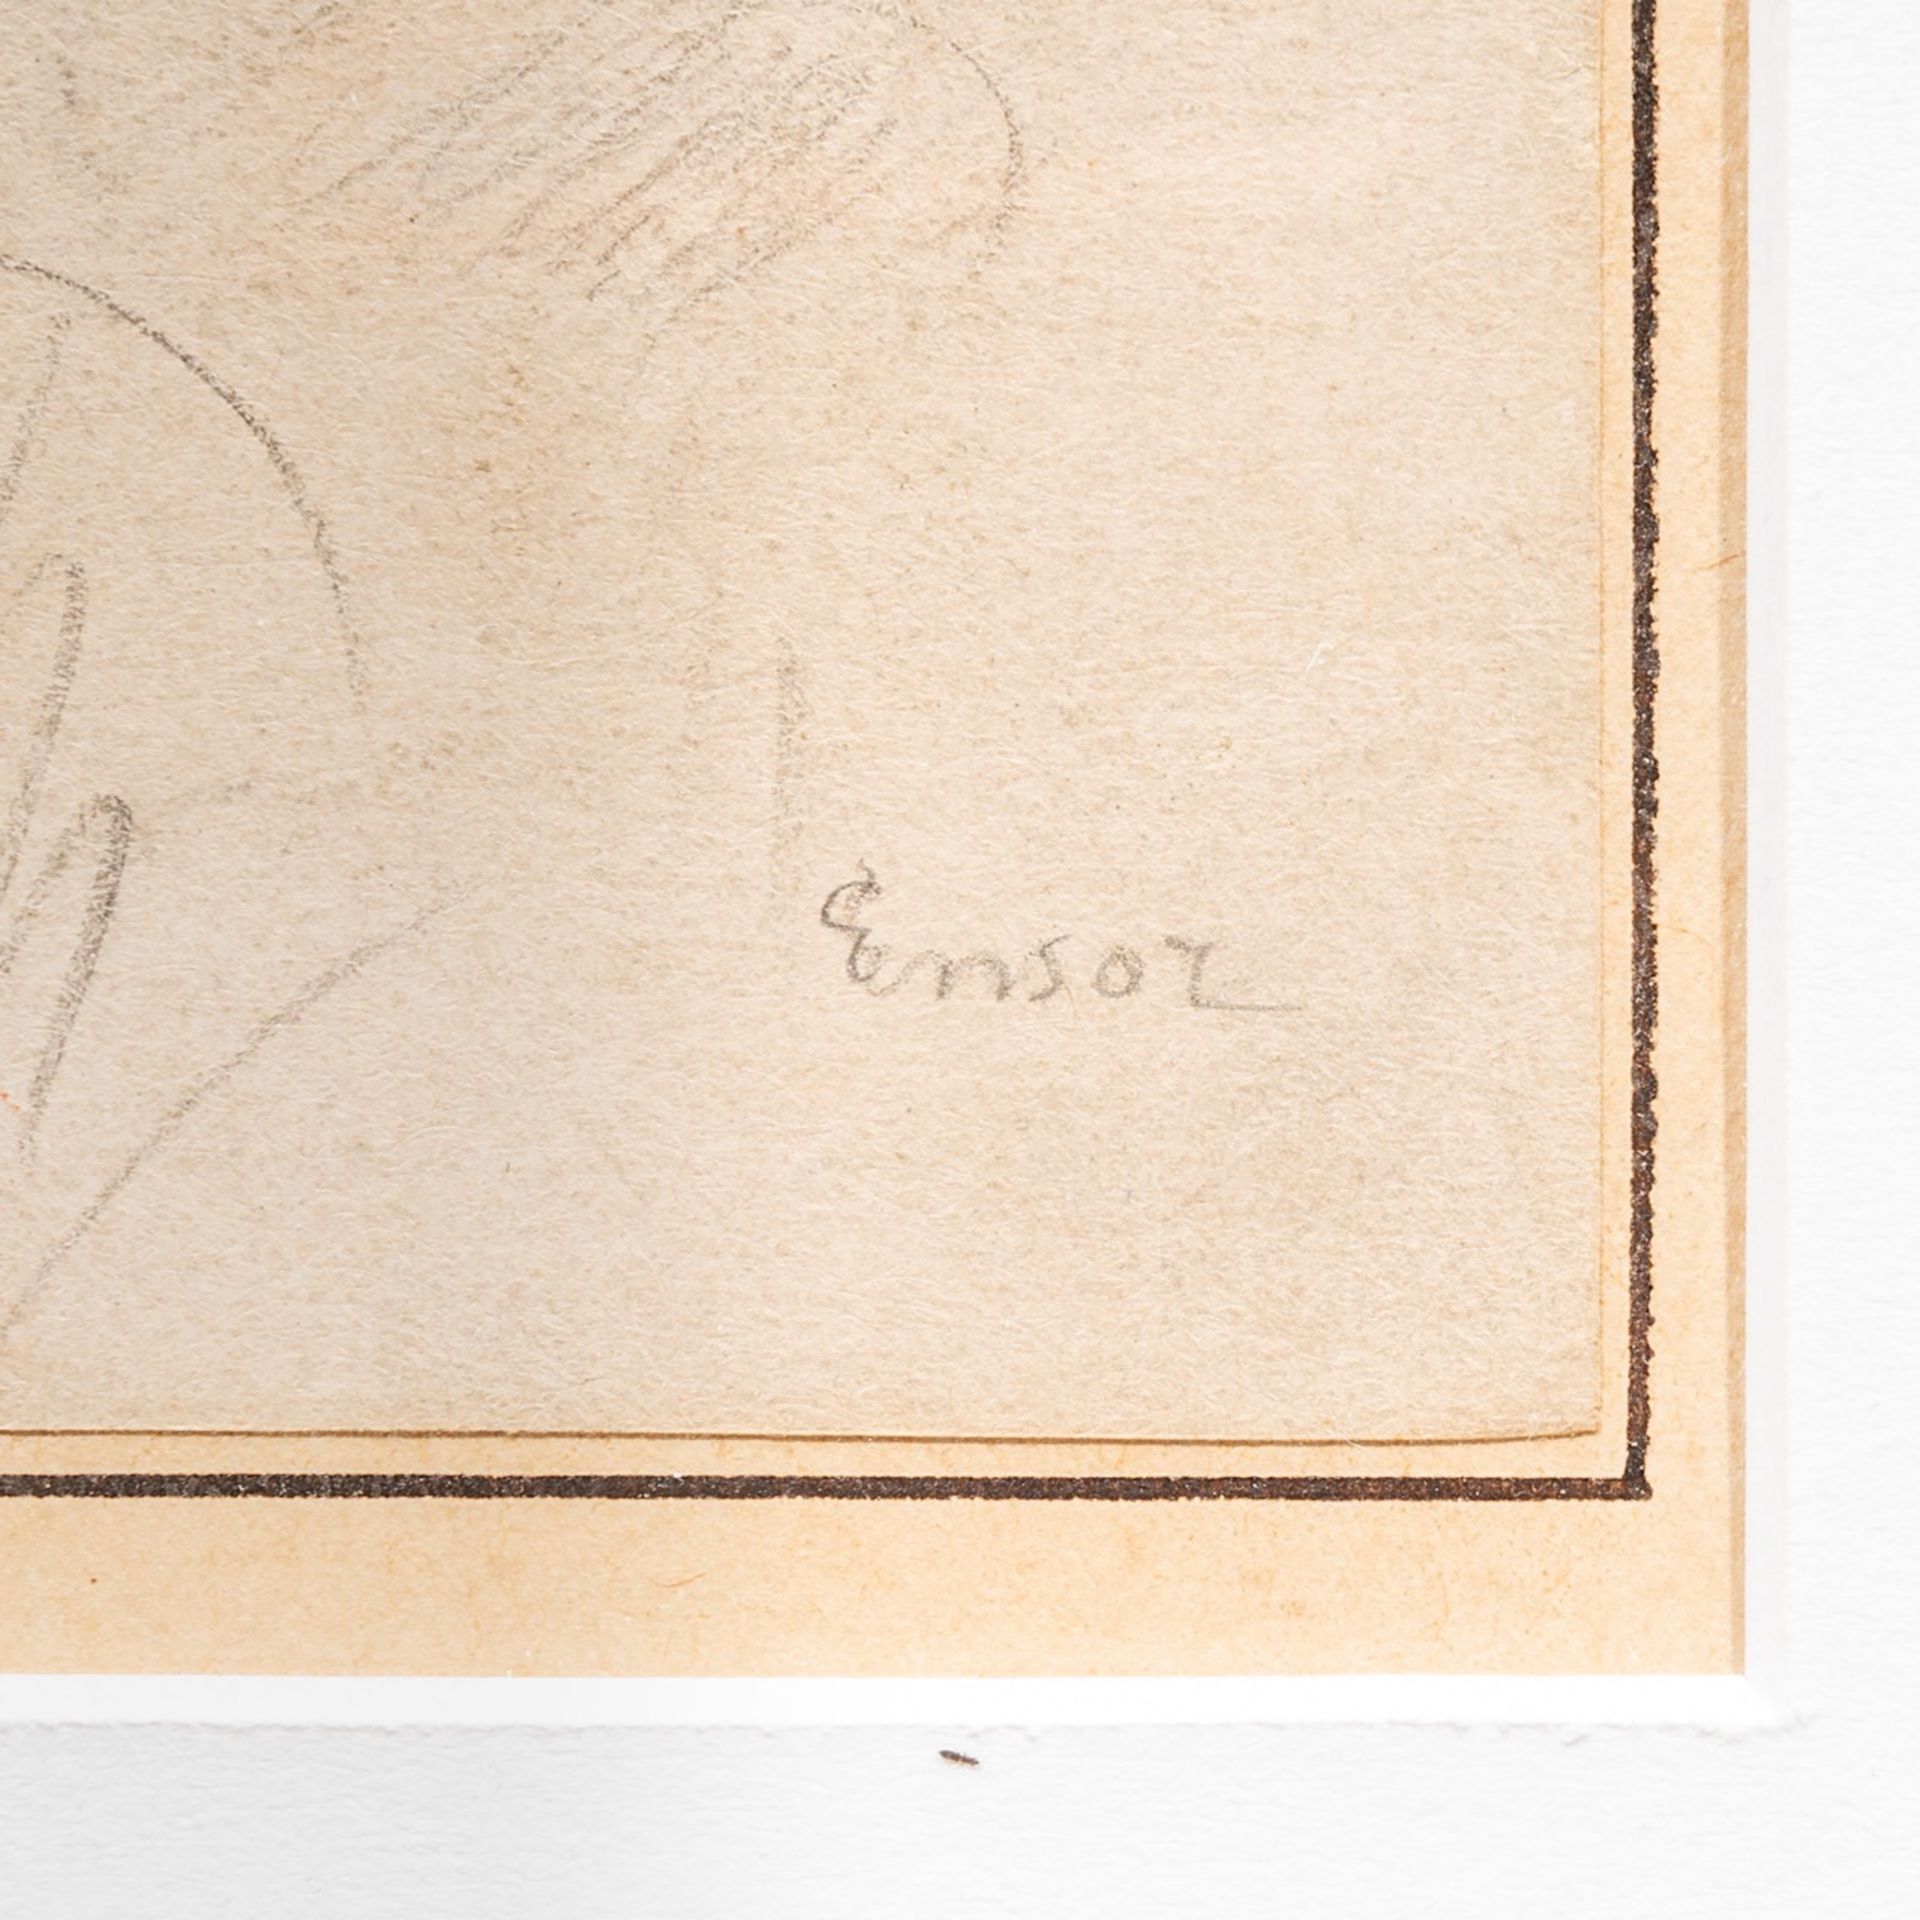 James Ensor (1860-1949), 'Un bras du fauteuil du bureau', 1889, pencil drawing 22 x 17 cm. (8.6 x 6. - Image 3 of 5